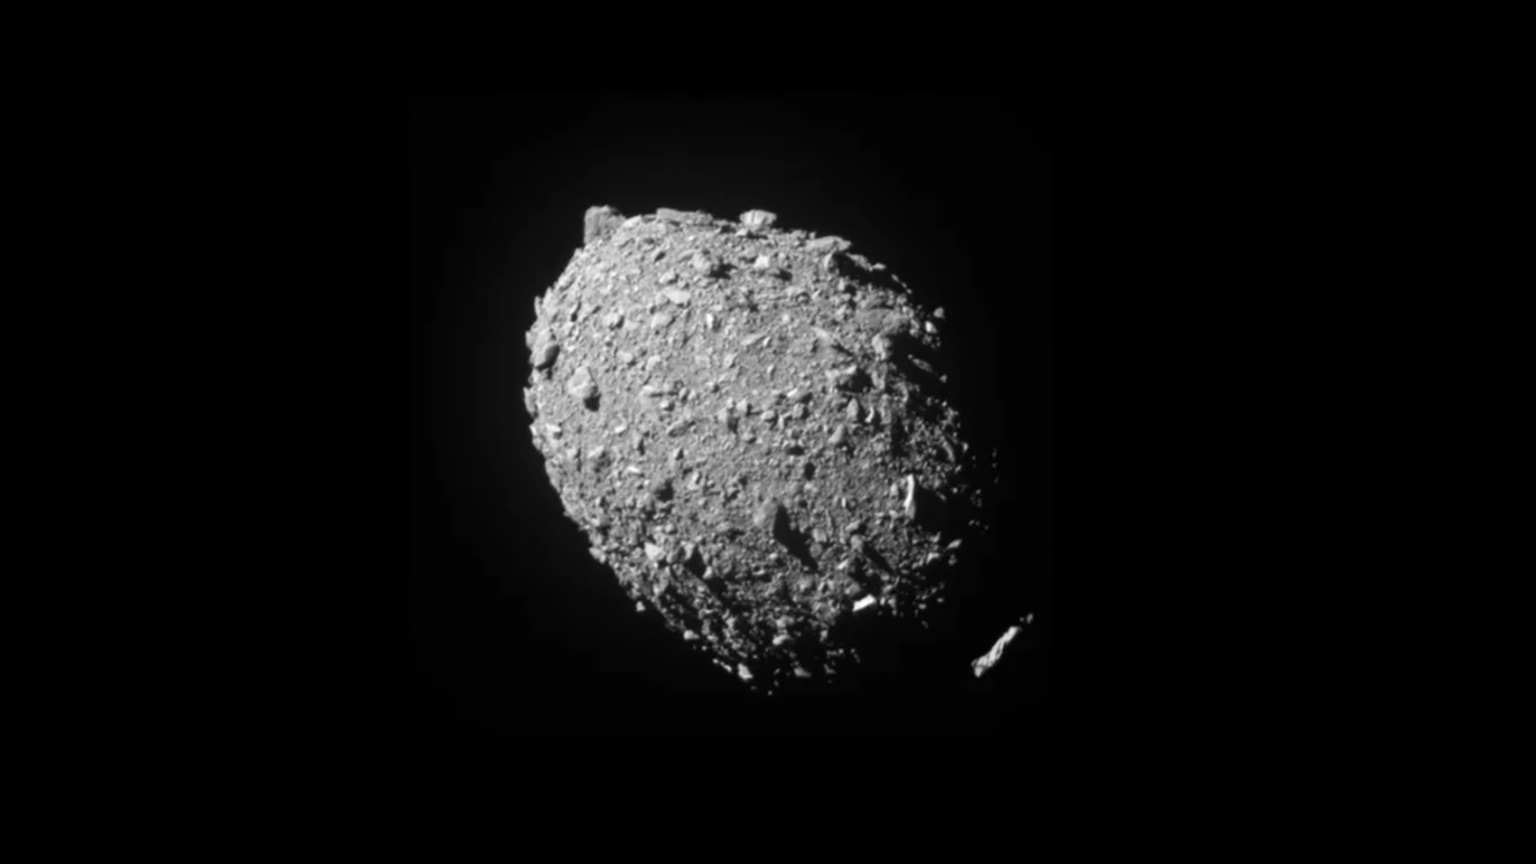 Baan en vorm van asteroïde veranderen na DART-inslag, NASA bevestigt dit